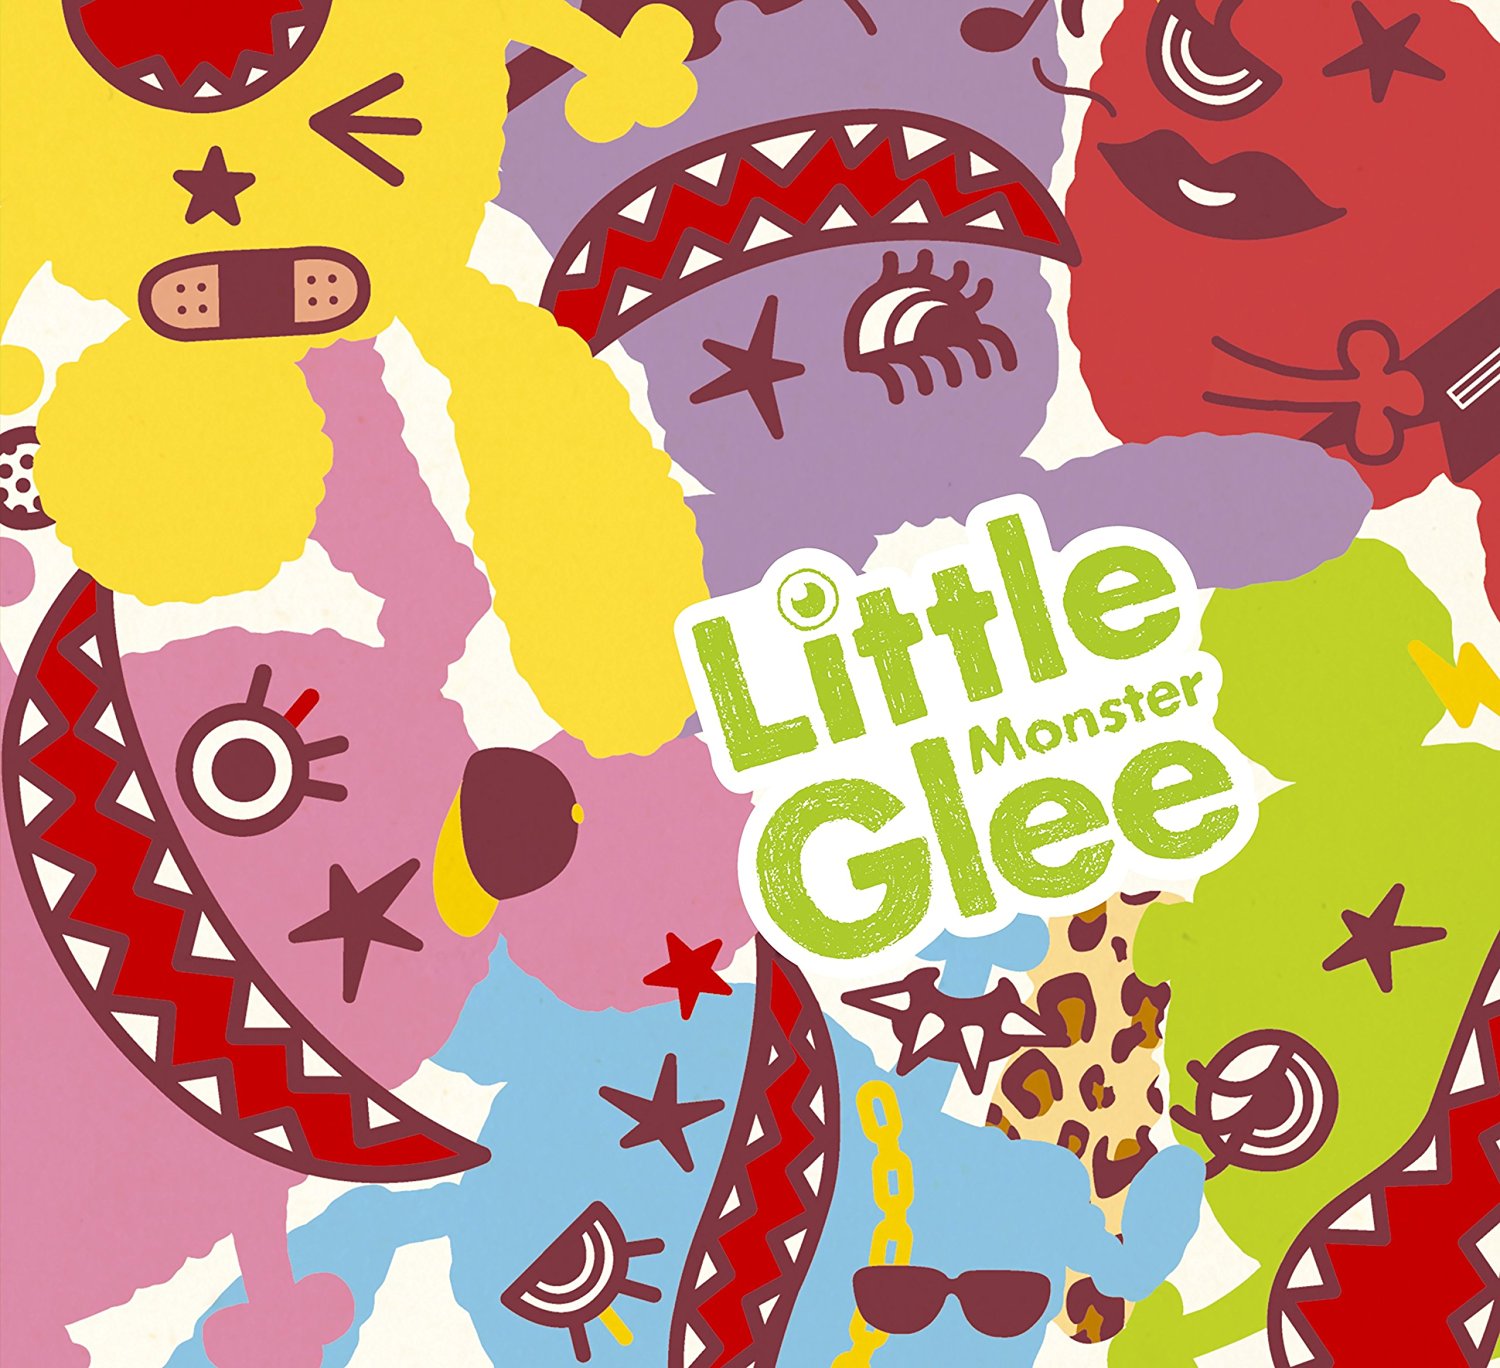 FAN’S VOICE！>>>Little Glee Monster presents ガオフェス2016 ～リトグリサマーキャンプ～